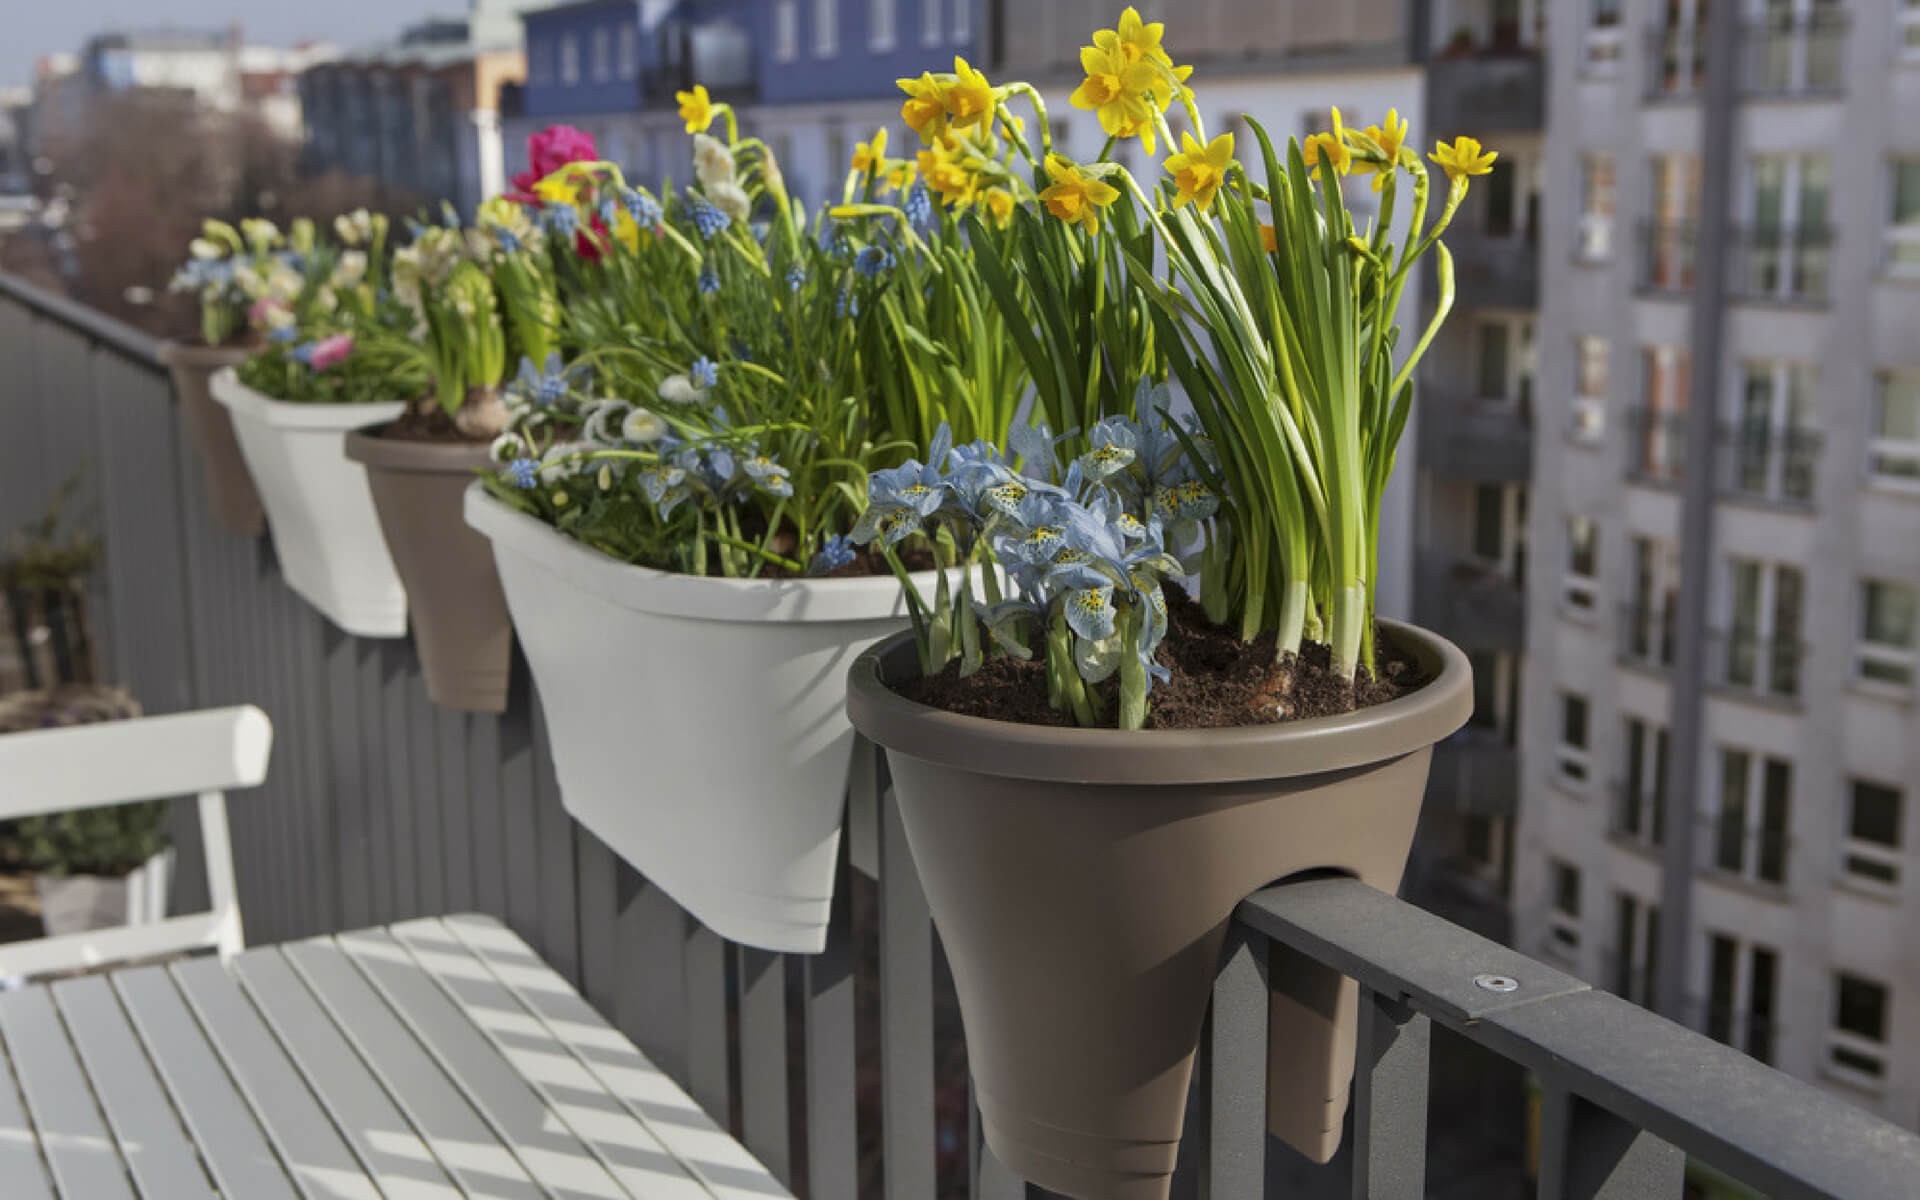 Le fioriere sono una soluzione ideale per arredare un balcone stretto e lungo creando la giusta privacy